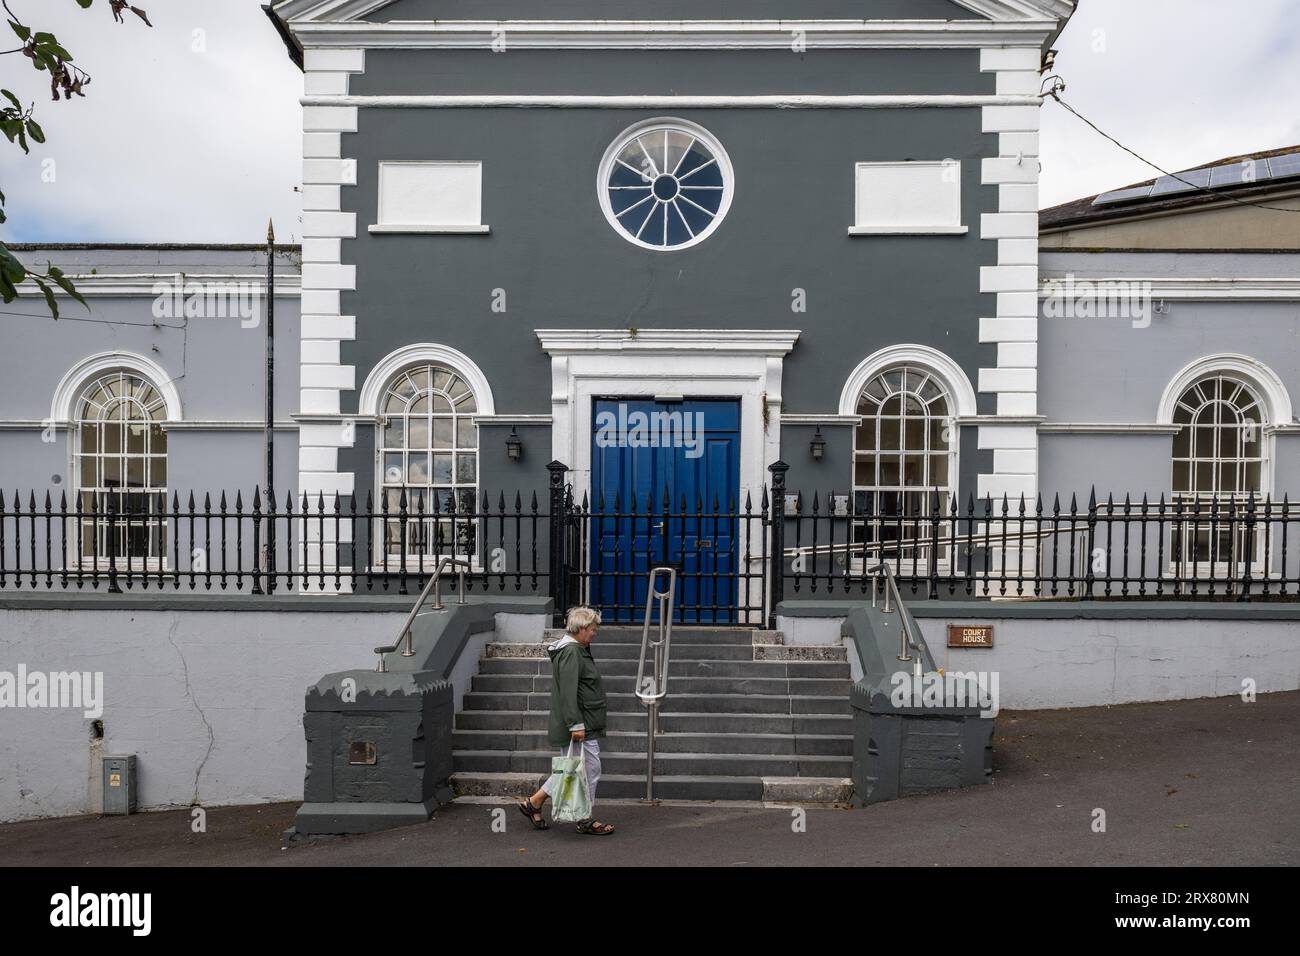 Courthouse in Bandon, West Cork, Ireland. Stock Photo